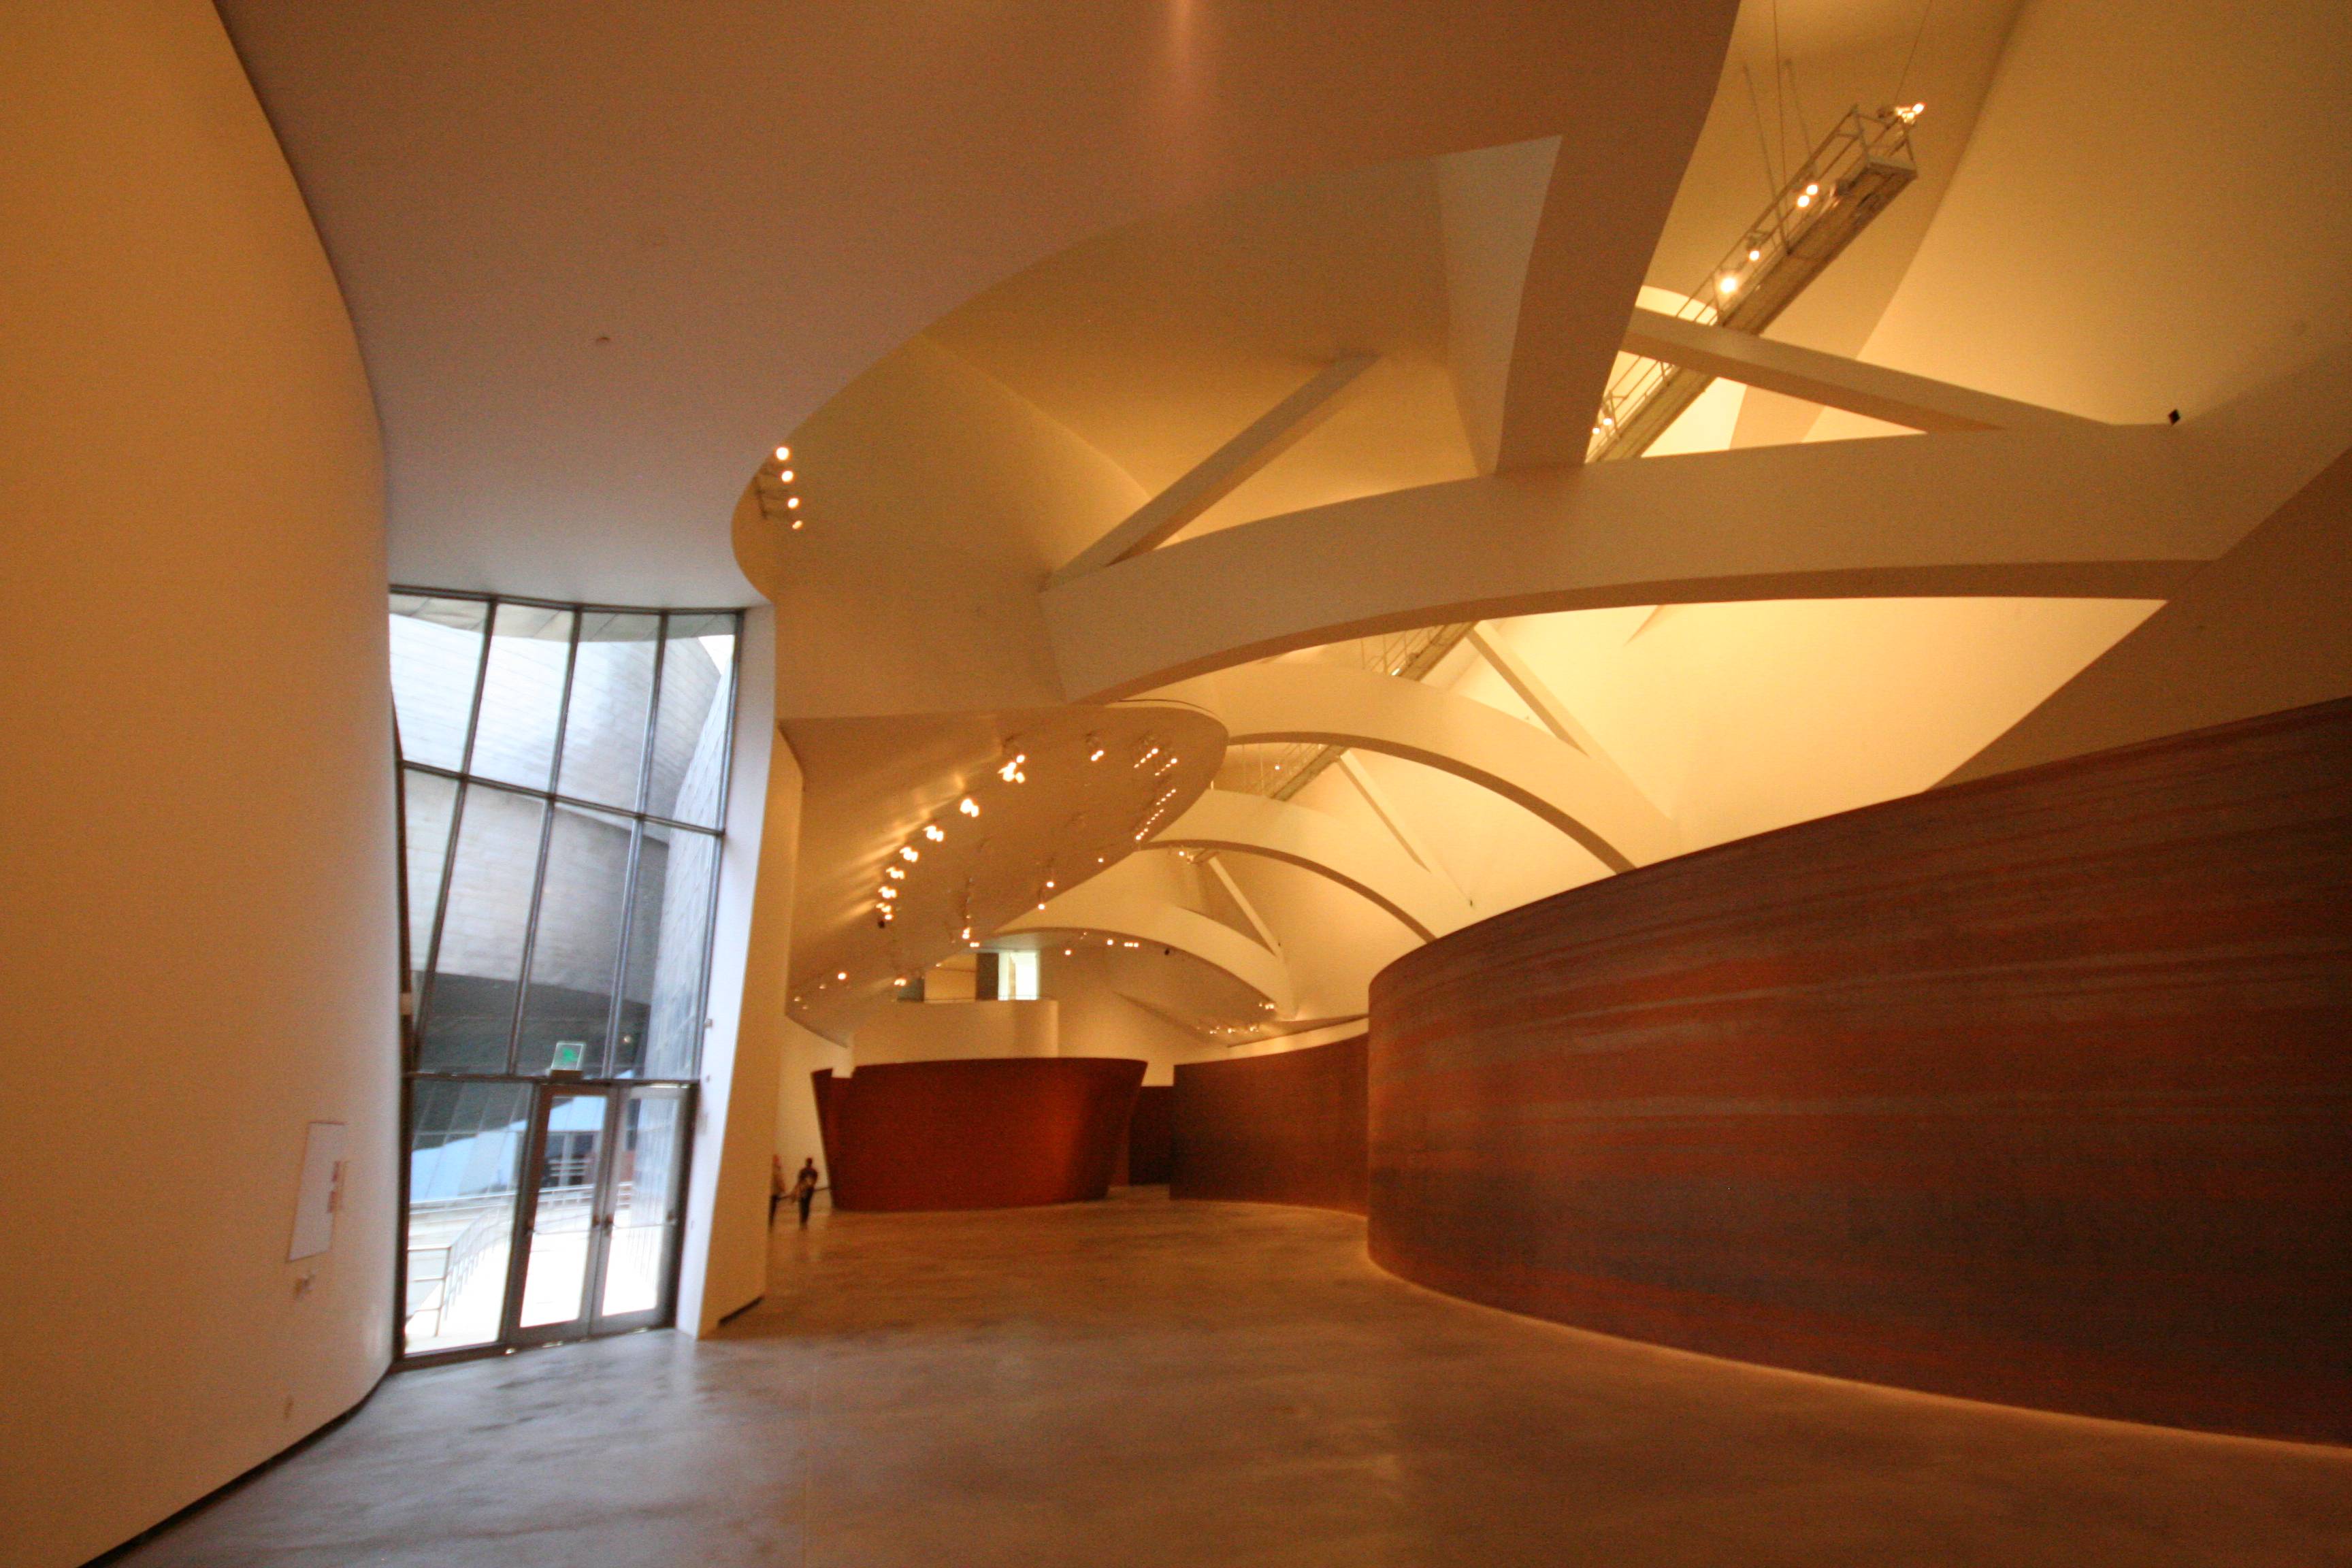 Музей гуггенхайма в бильбао: деконструкция пространства и сознания